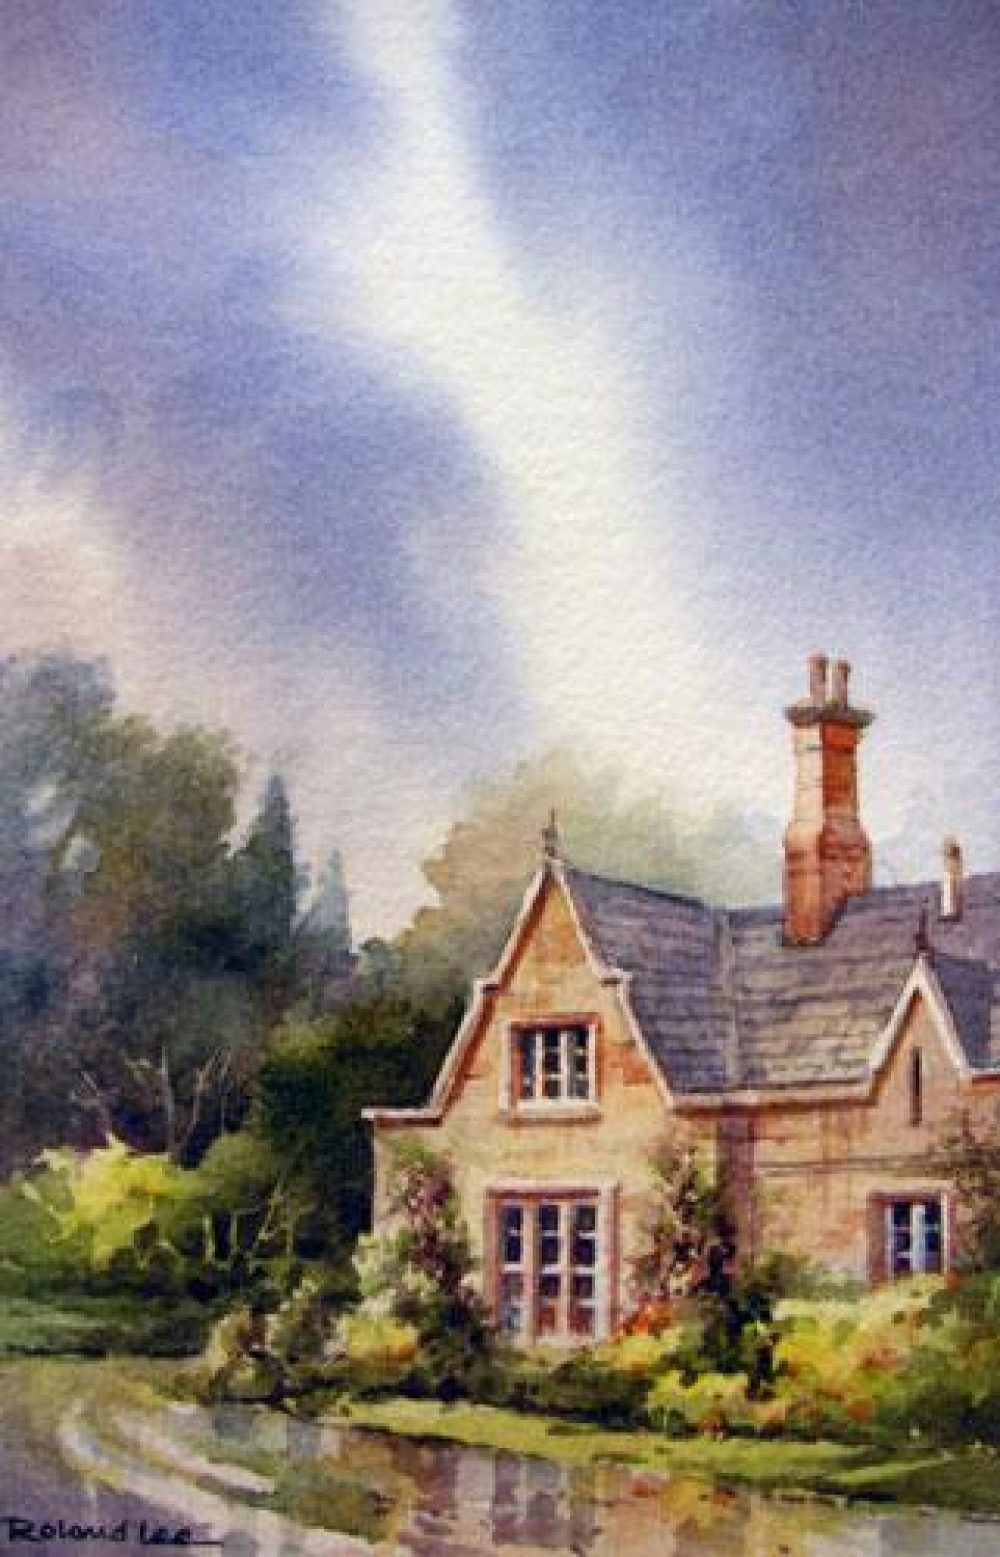 Irish Skies - Ireland - Watercolor painting of Muckross House